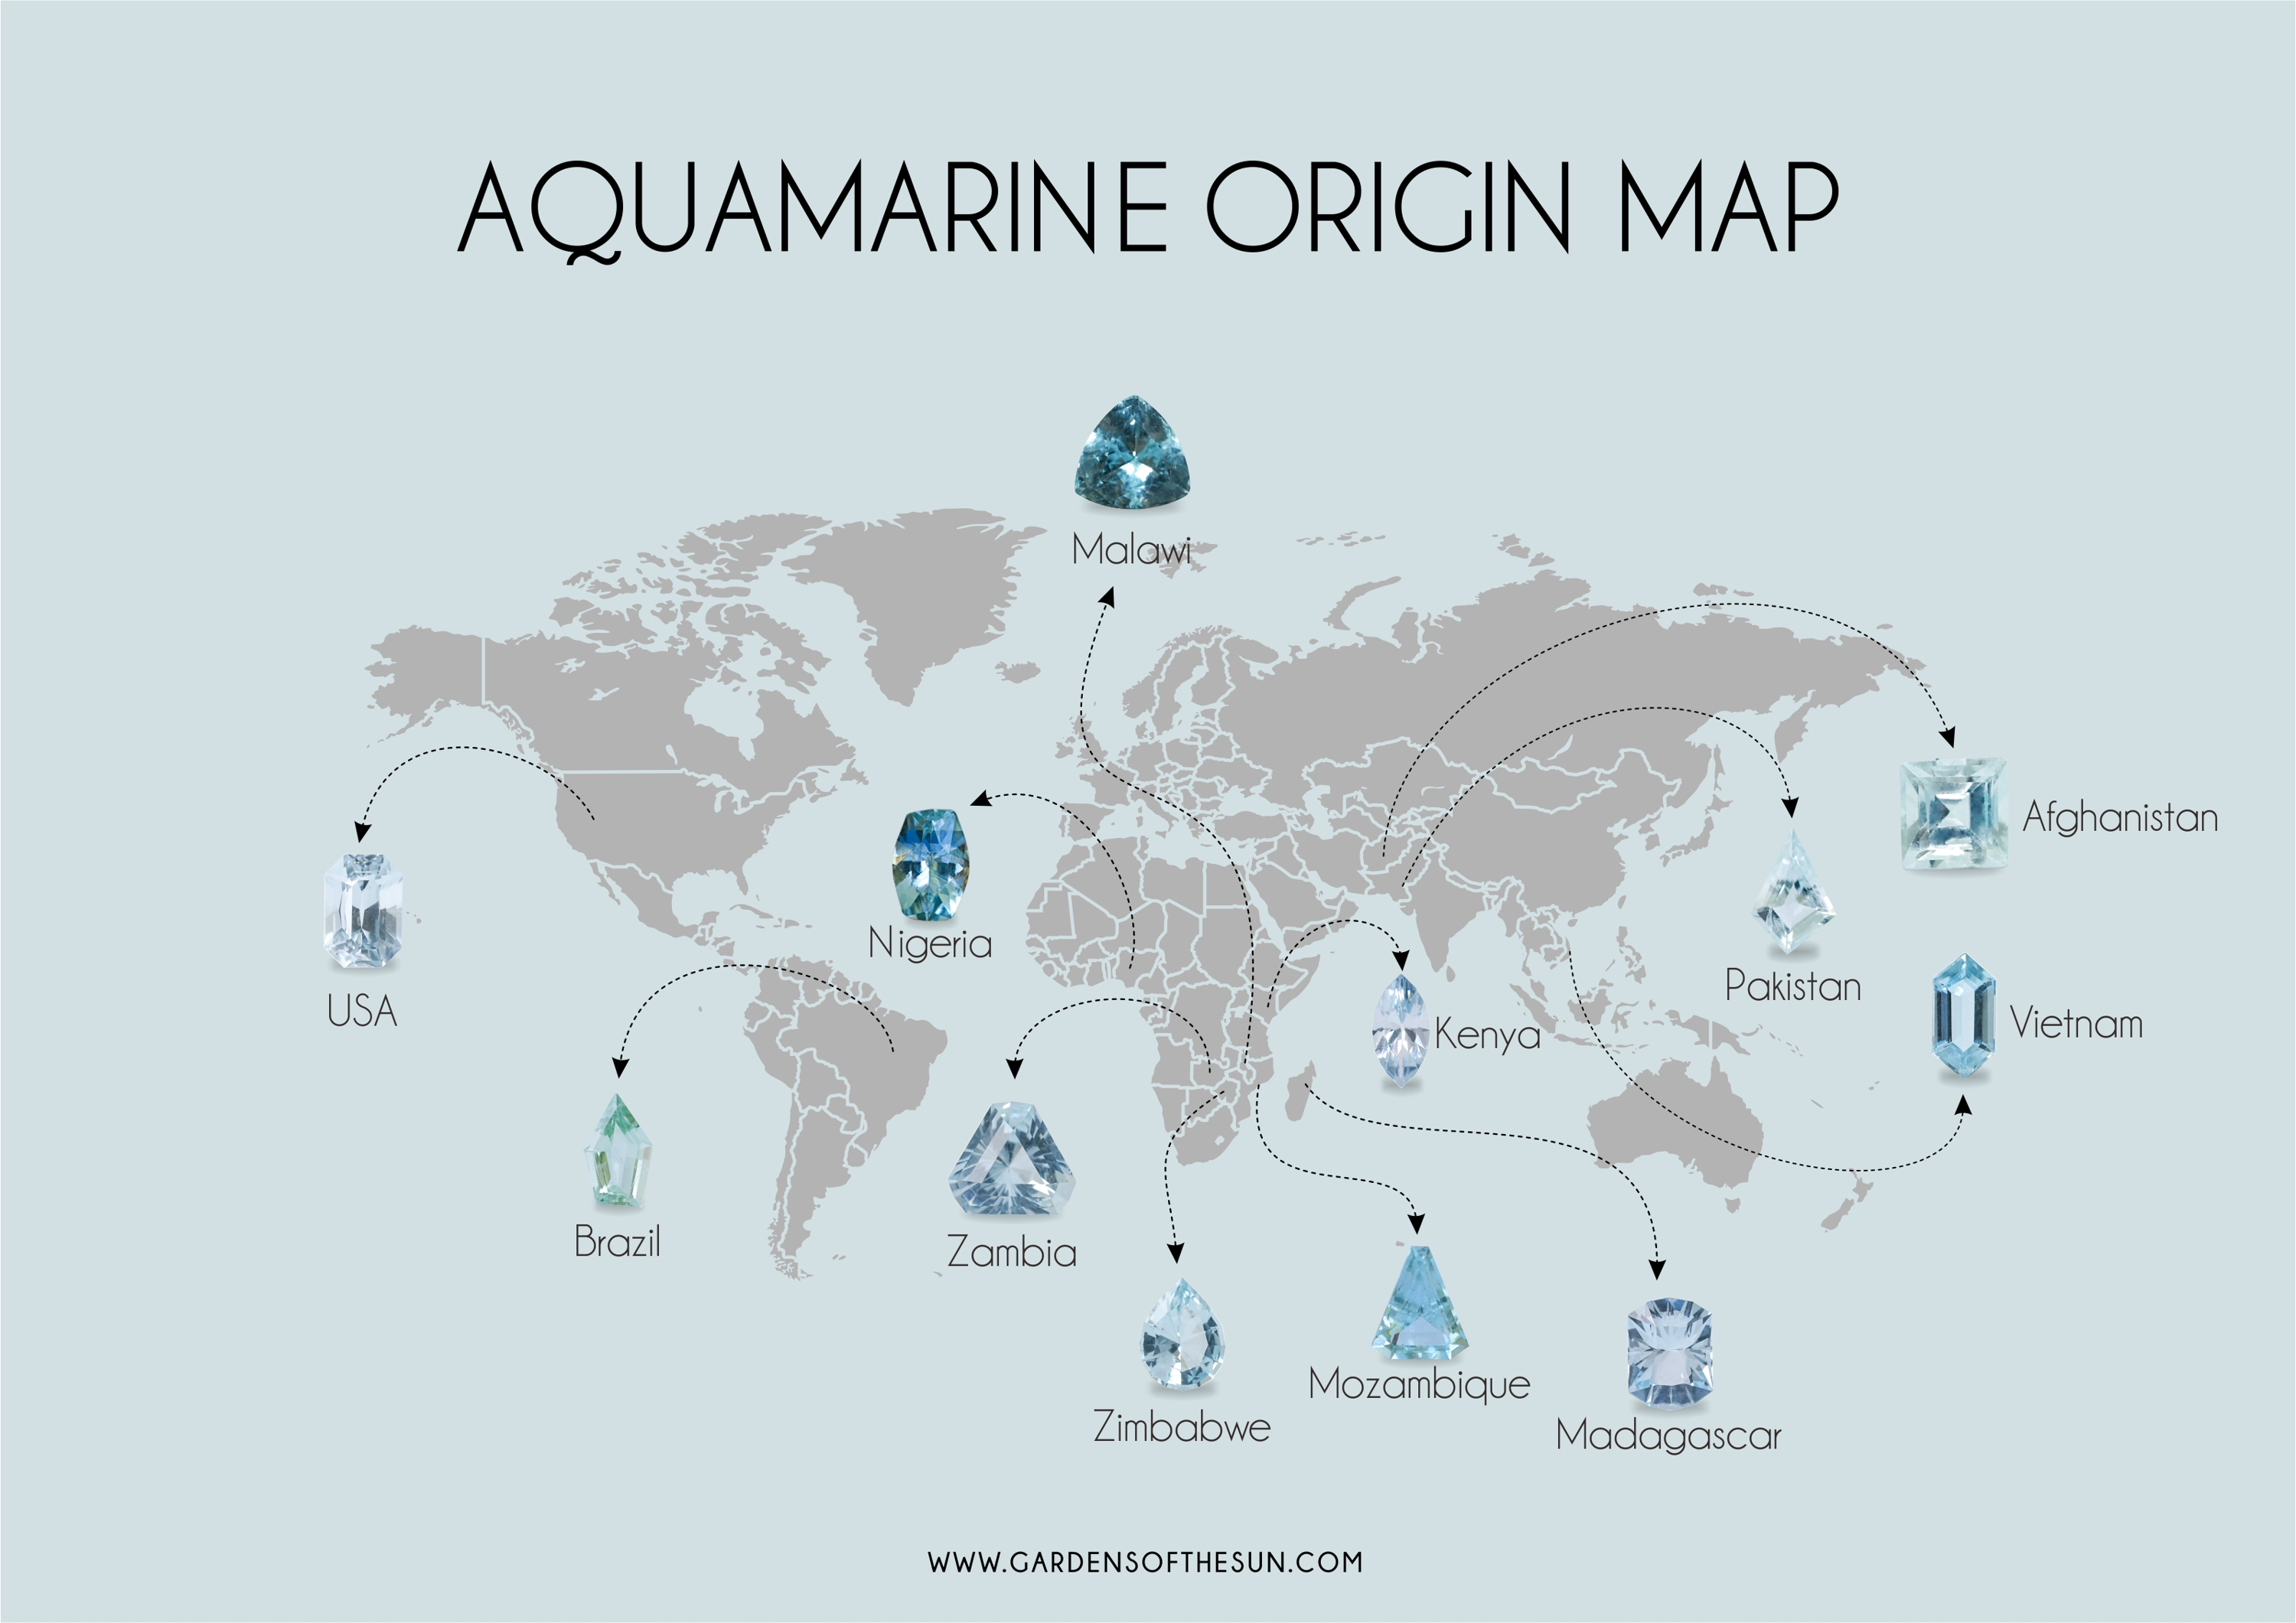 Aquamarine origin map